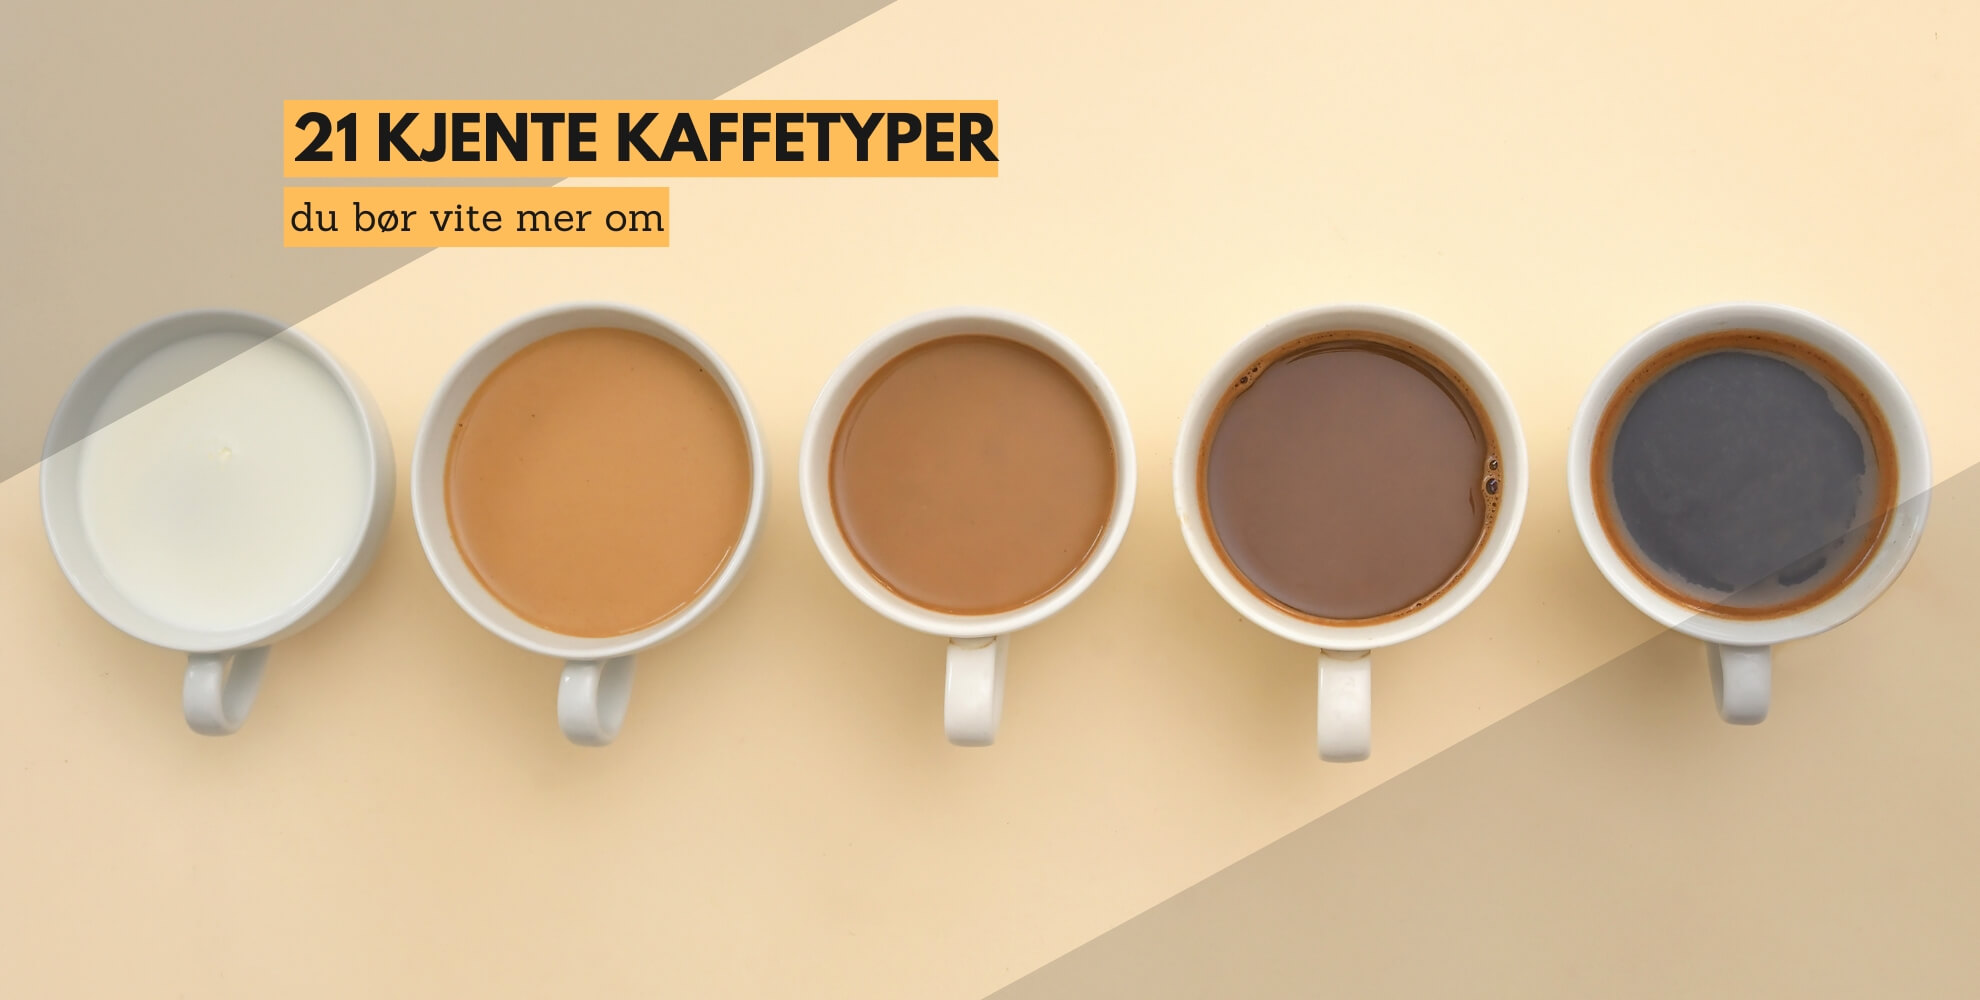 15 kaffetyper og forklaring av hver kaffetype